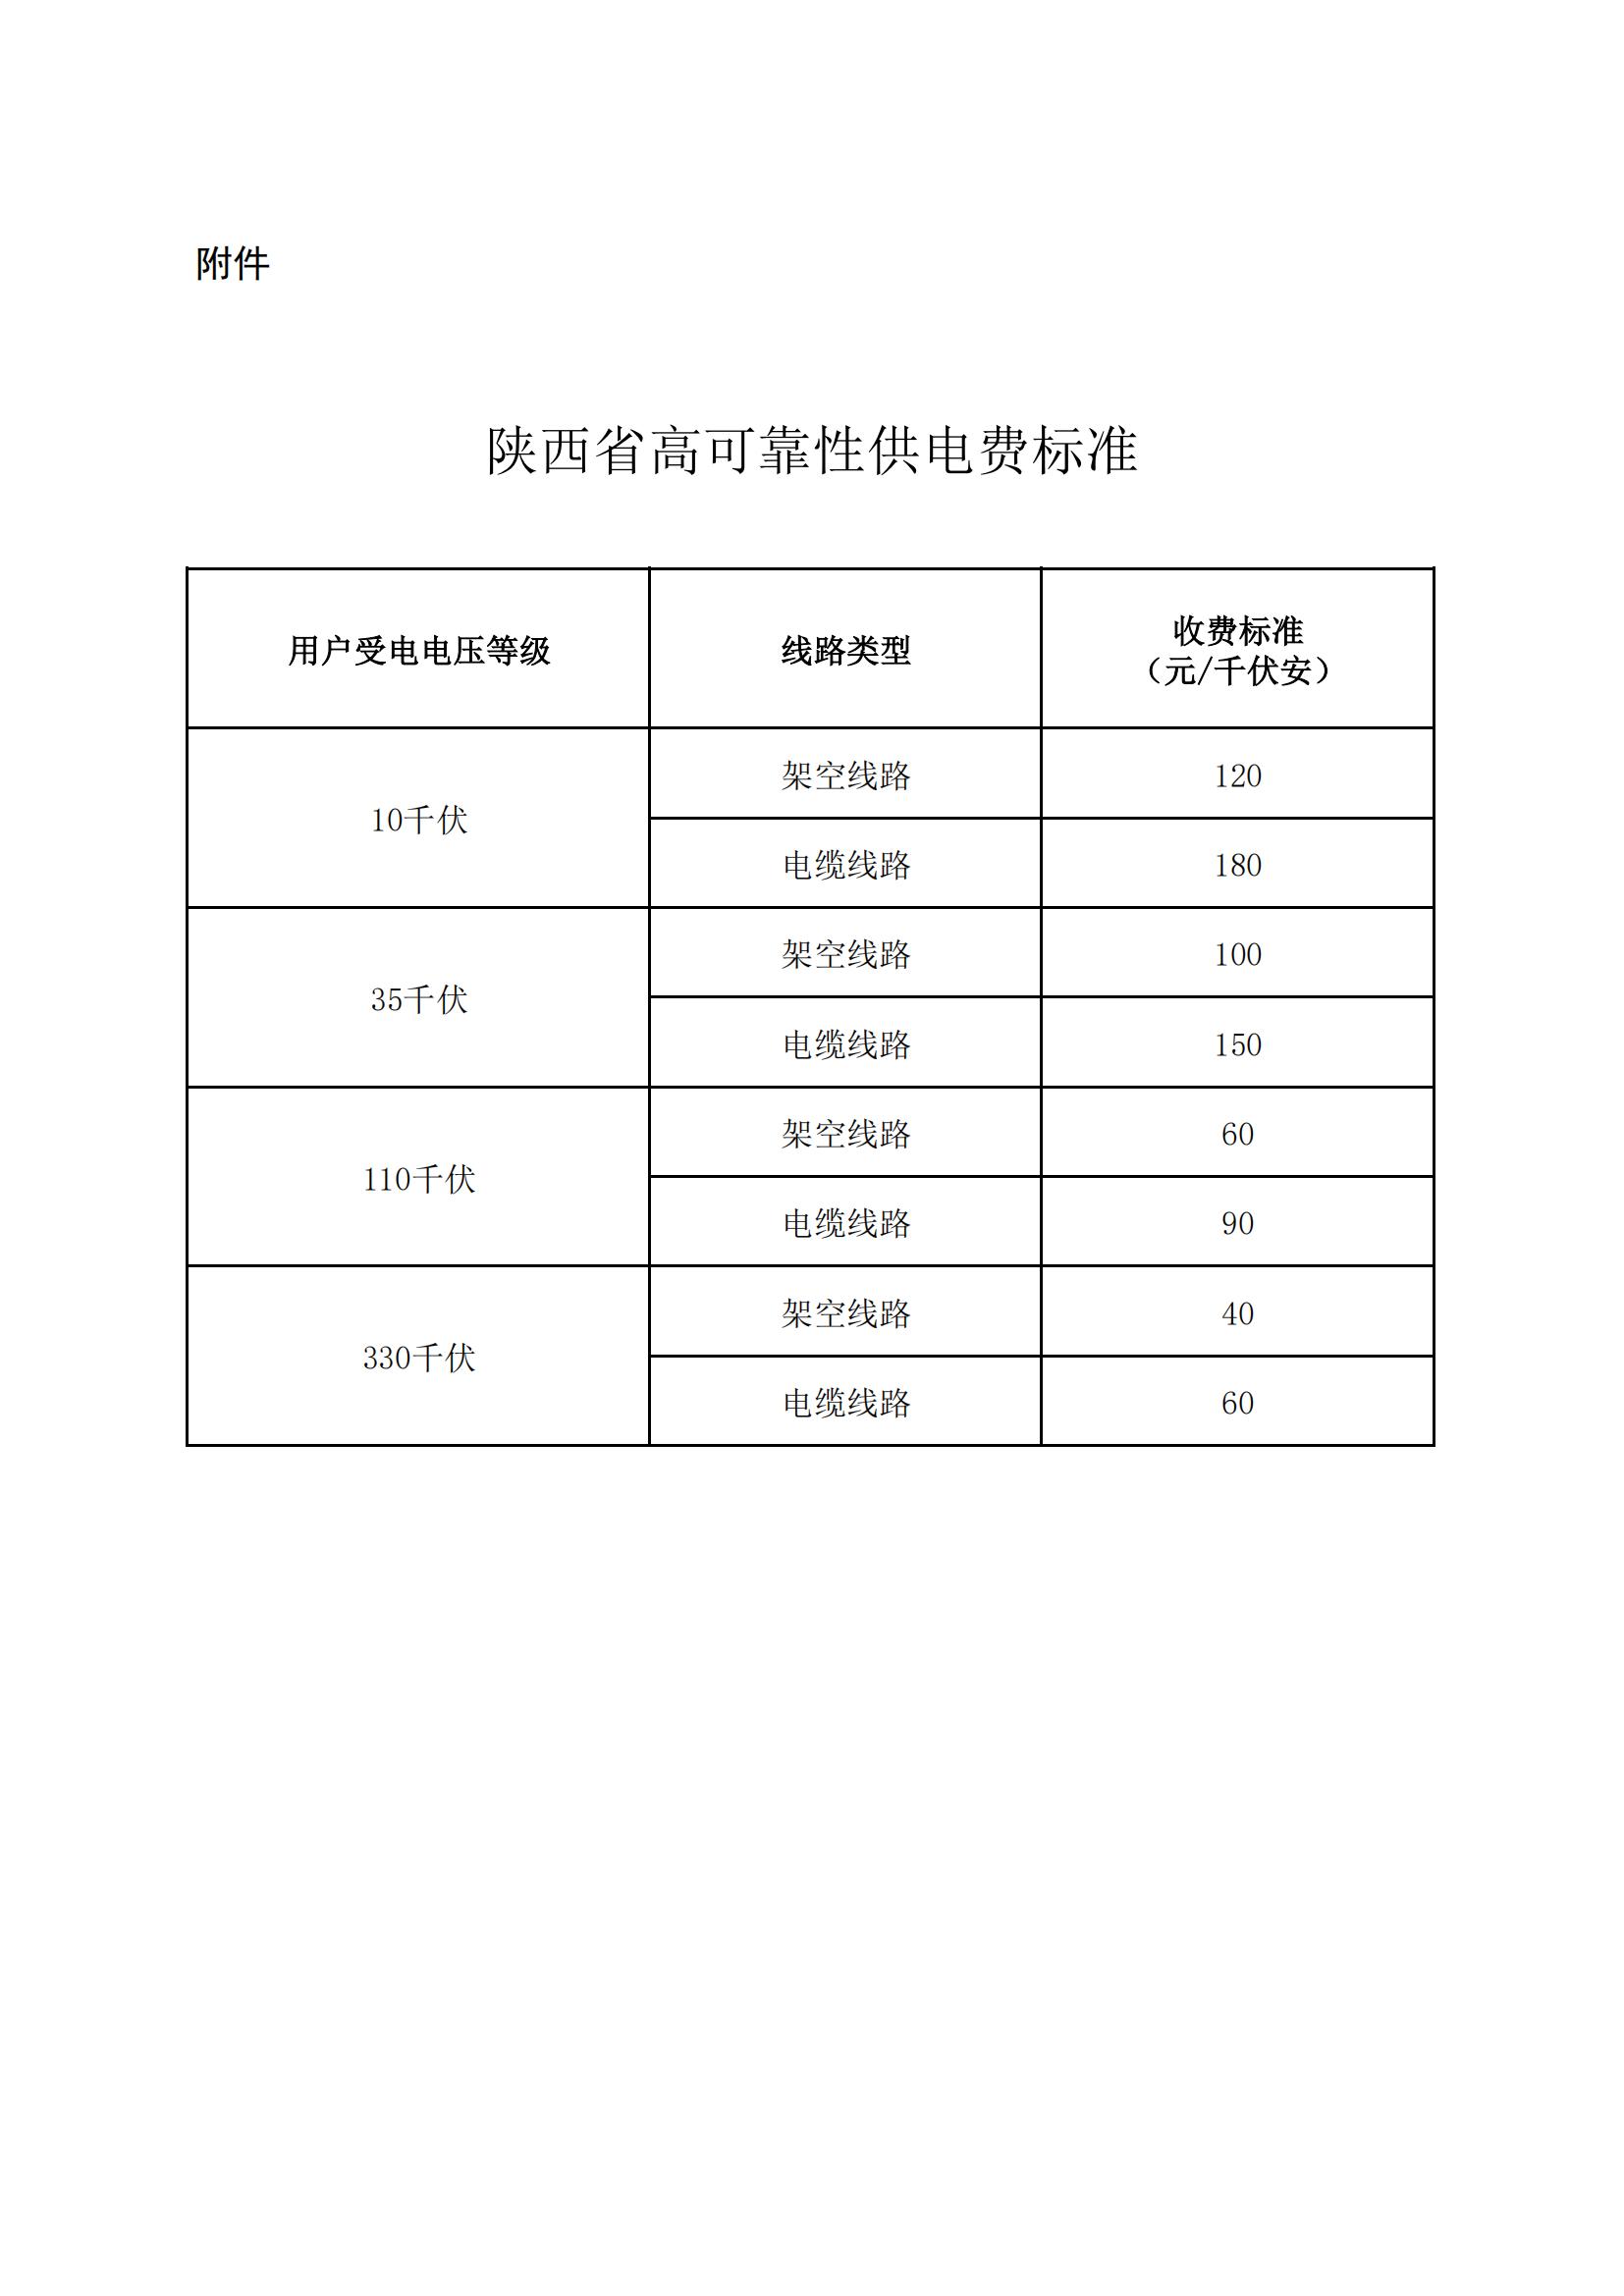 陕西省高可靠性供电费标准_00.jpg